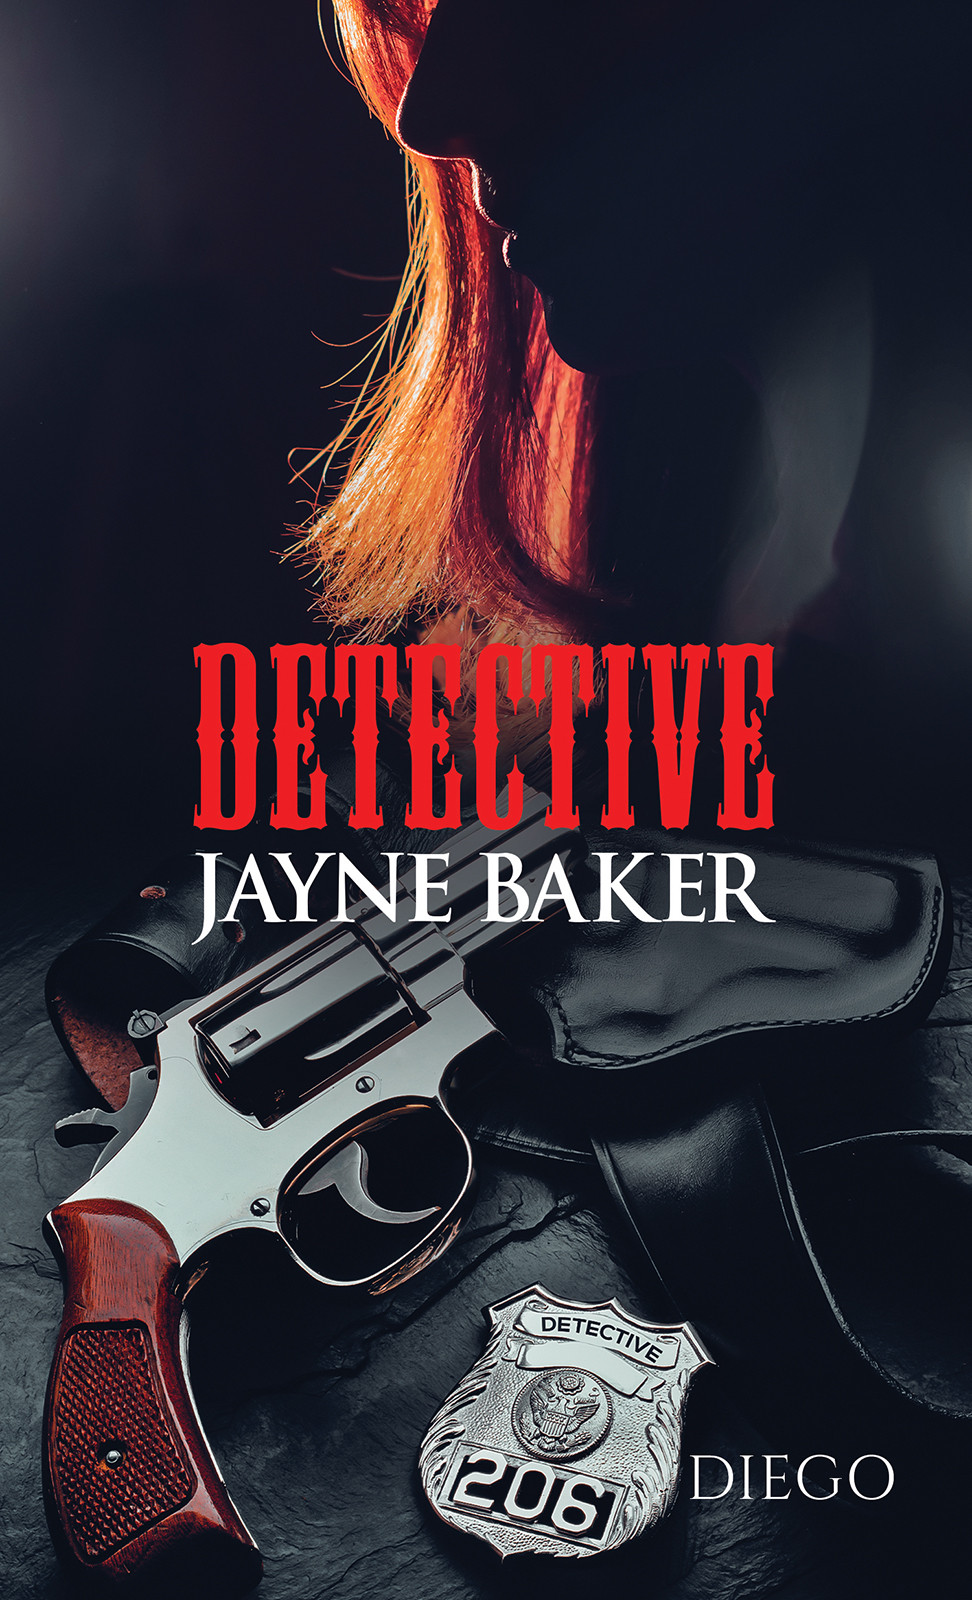 Detective Jayne Baker